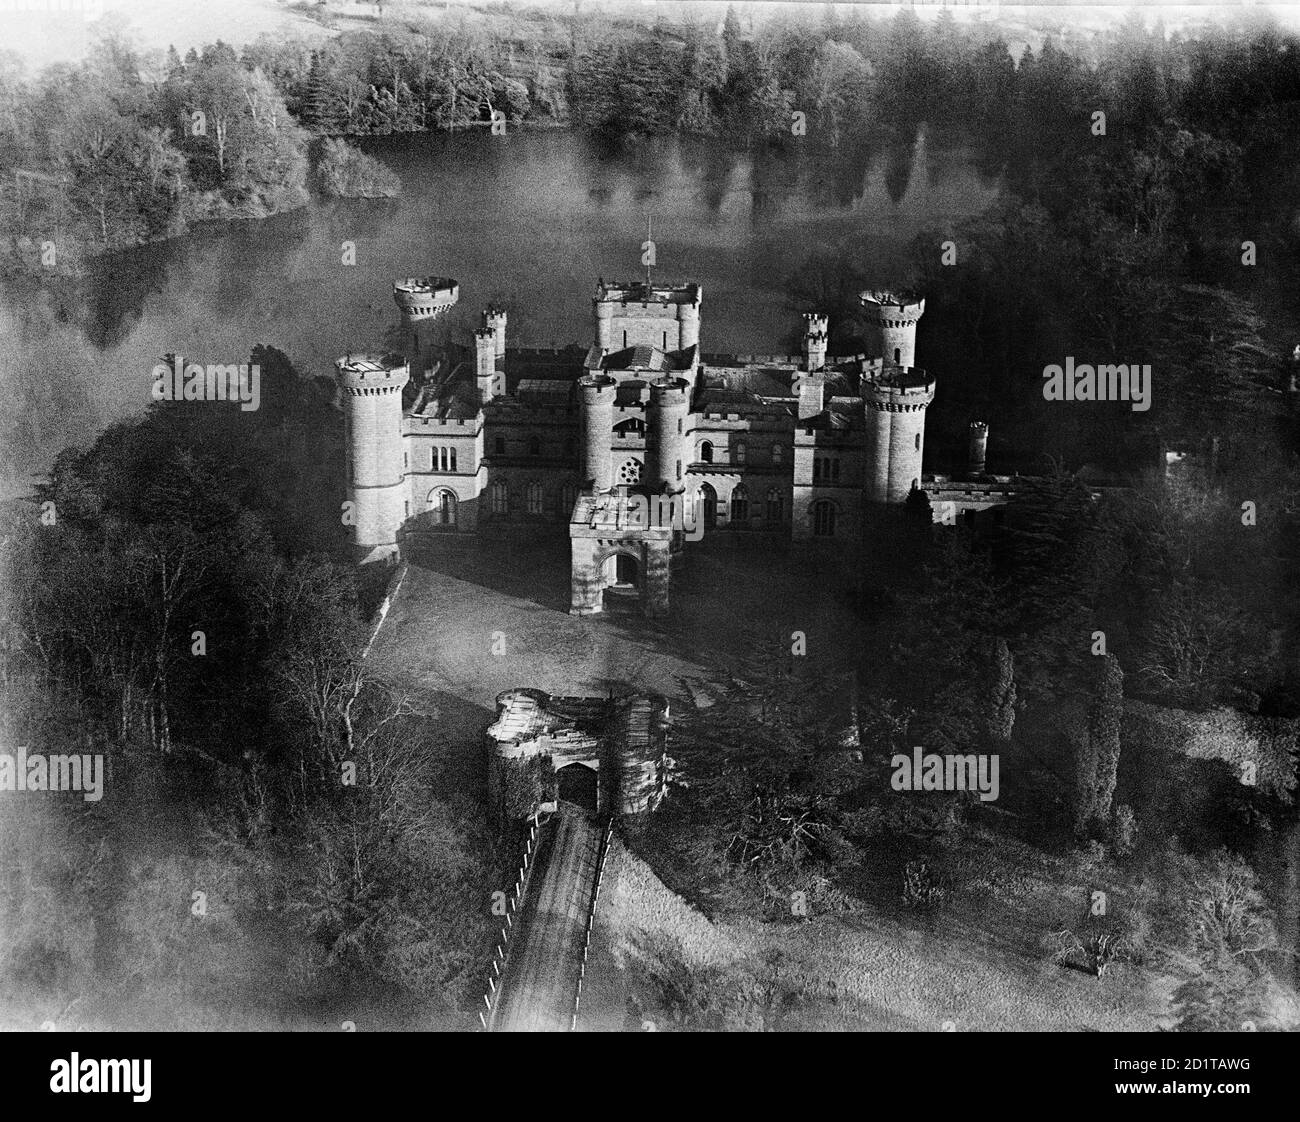 EASTNOR CASTLE, vicino a Ledbury, Herefordshire. Veduta aerea del Castello di Eastnor, costruito nel 1812-20 da Robert Smirke per apparire come un castello medievale. Fotografato nel marzo 1921. Aerofilms Collection (vedi link). Foto Stock